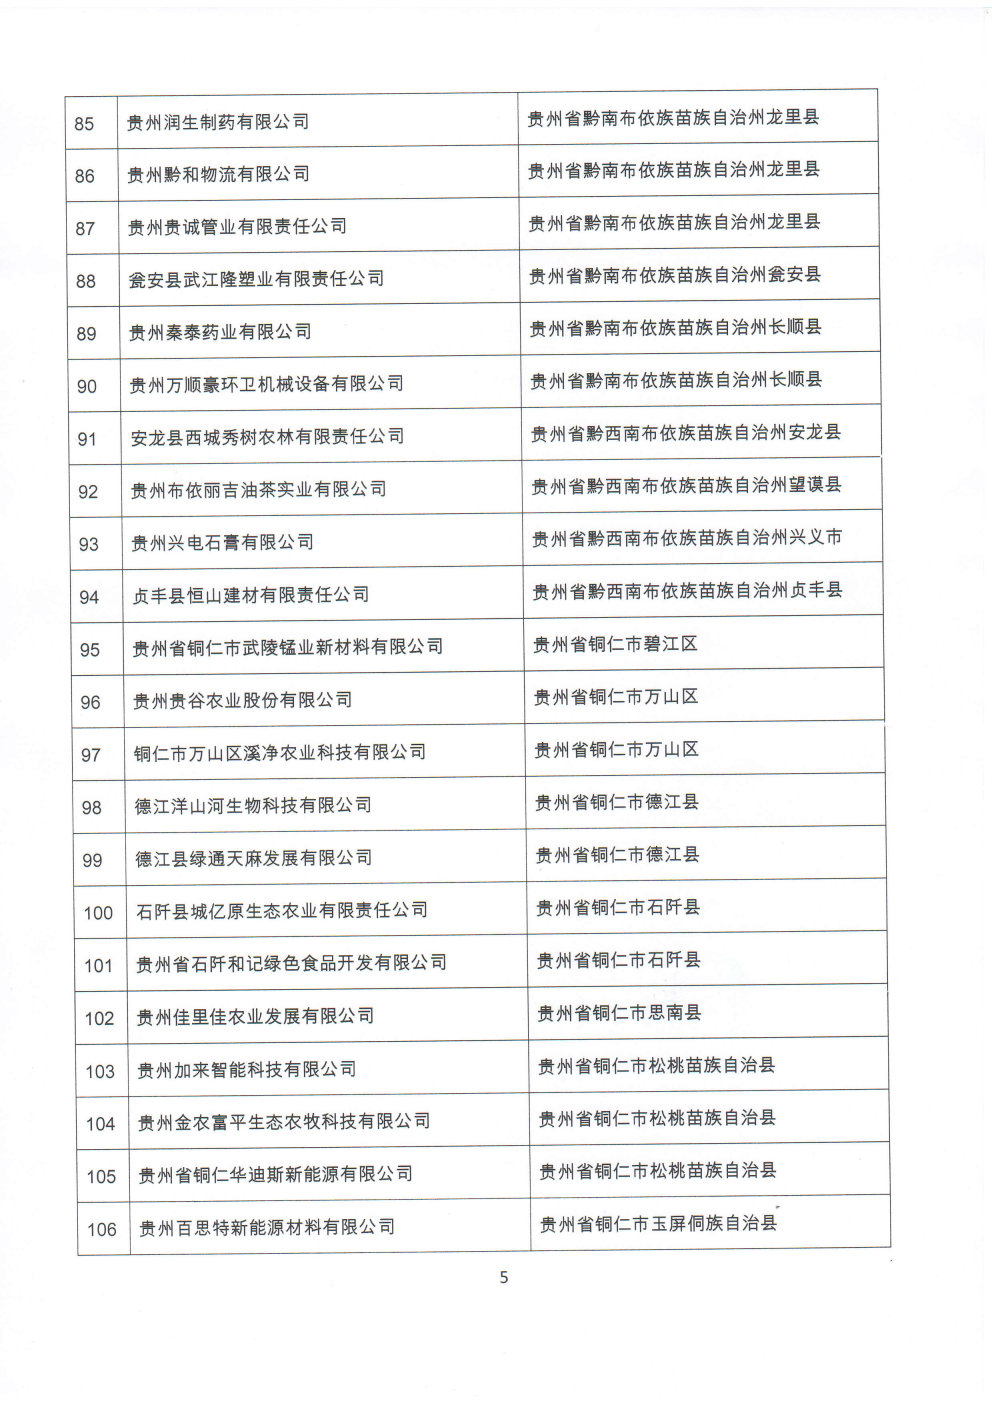 附件：贵州省2020年第三批拟入库科技型中小企业名单_Page5_Image1.jpg